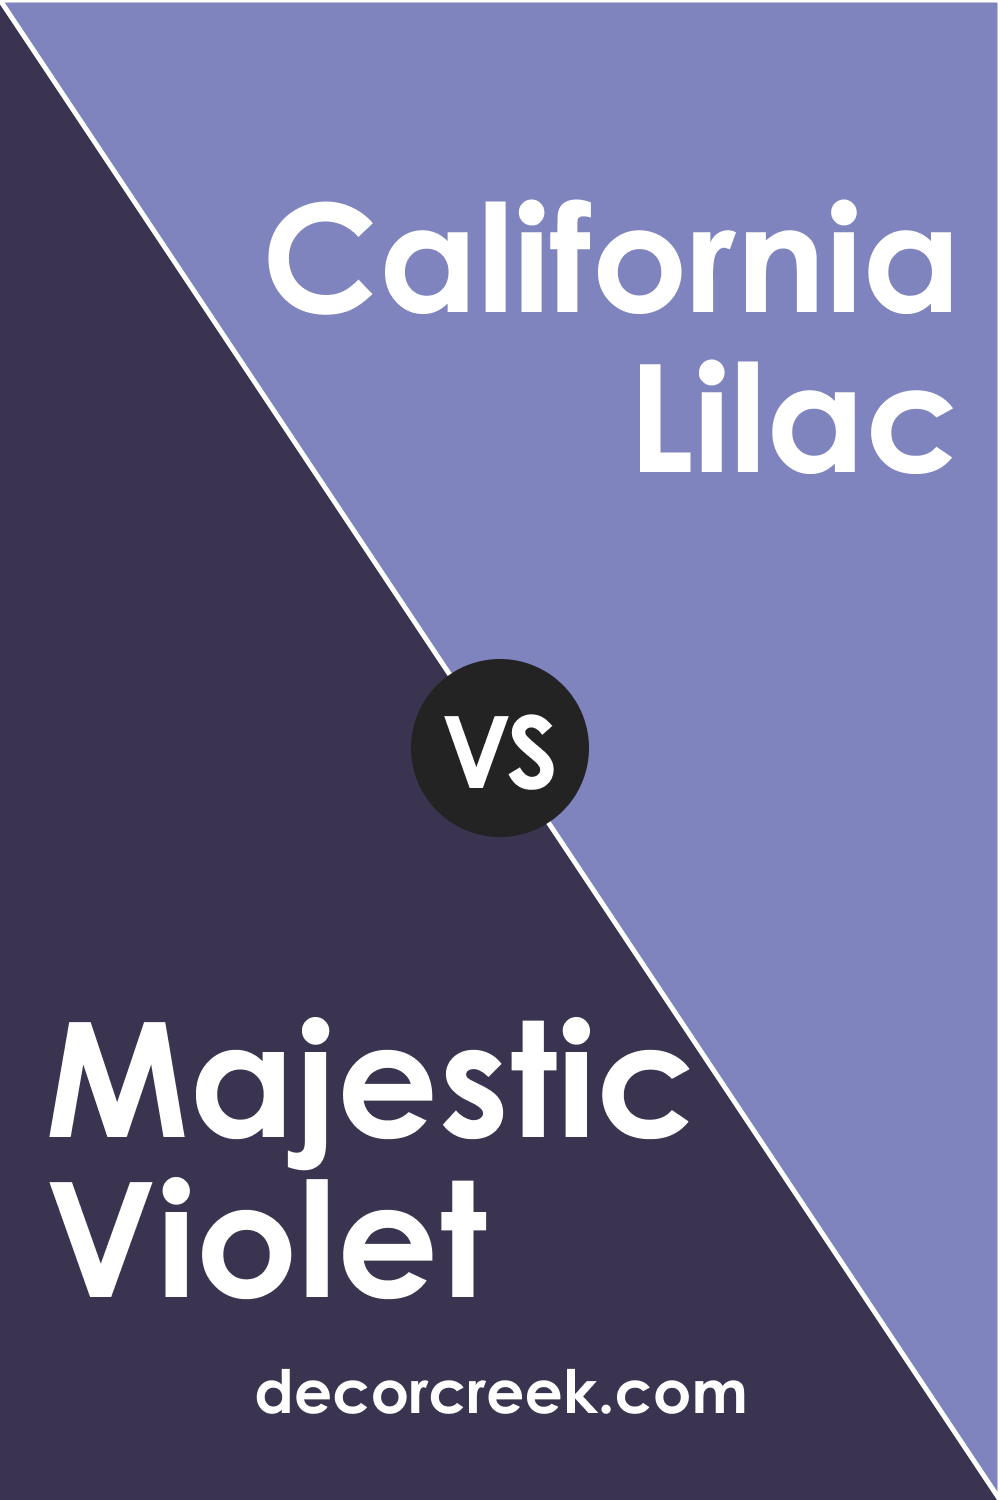 Majestic Violet 2068-10 vs. BM 2068-40 California Lilac